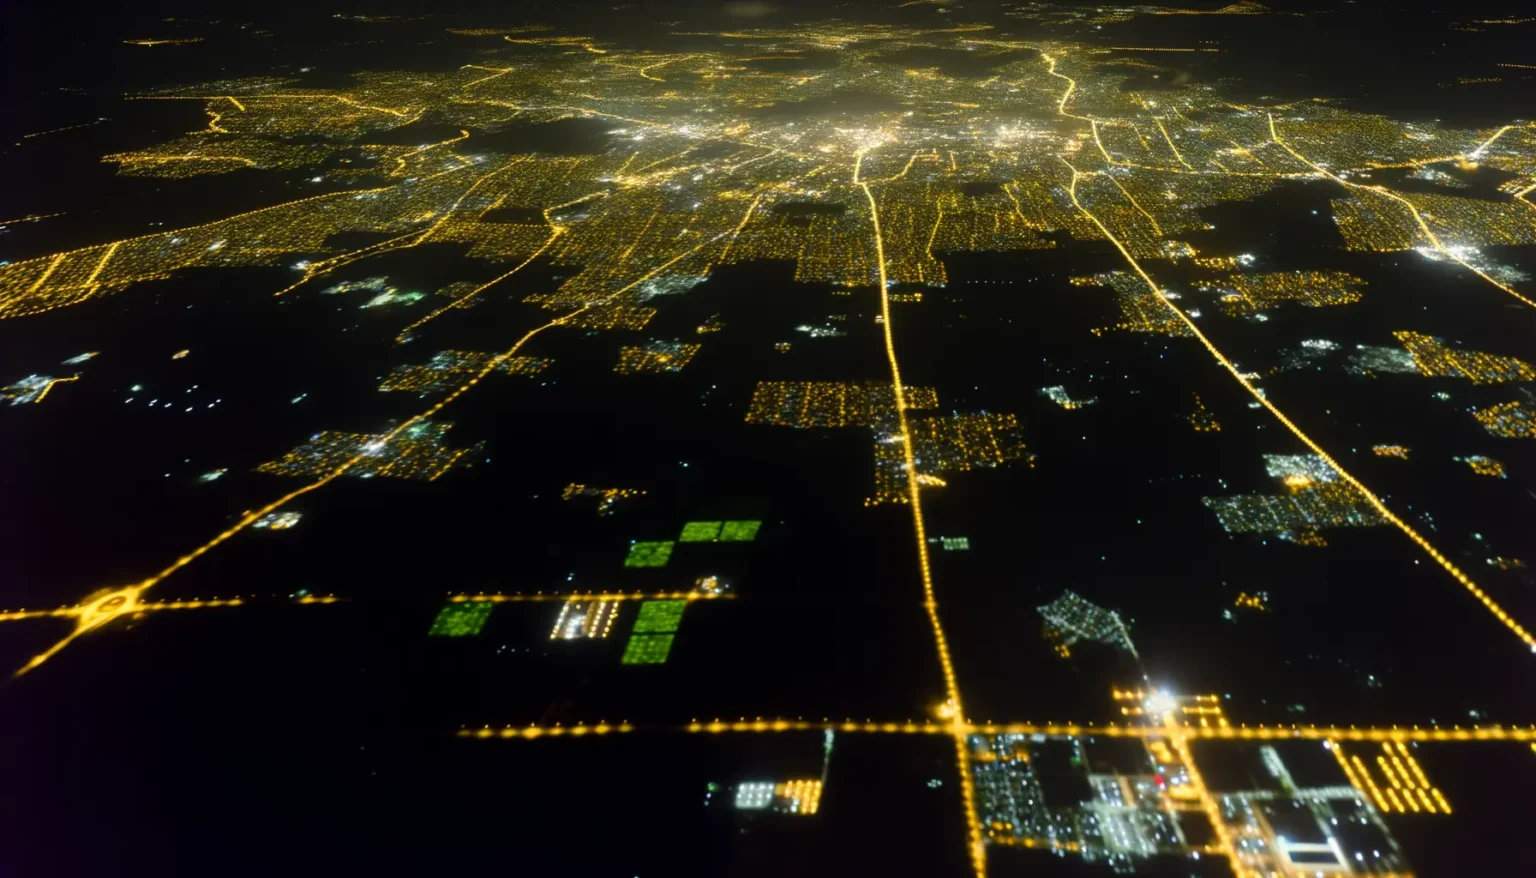 Luftaufnahme einer Stadt bei Nacht, mit zahlreichen goldenen Lichtern, die Straßen und dicht bebaute Gebiete markieren, umgeben von dunklen Flächen mit vereinzelten Lichtern, die weniger dicht besiedelte oder unbebaute Gebiete andeuten. Die Lichter bilden ein komplexes Muster, das auf eine große urbane Ausdehnung hinweist.